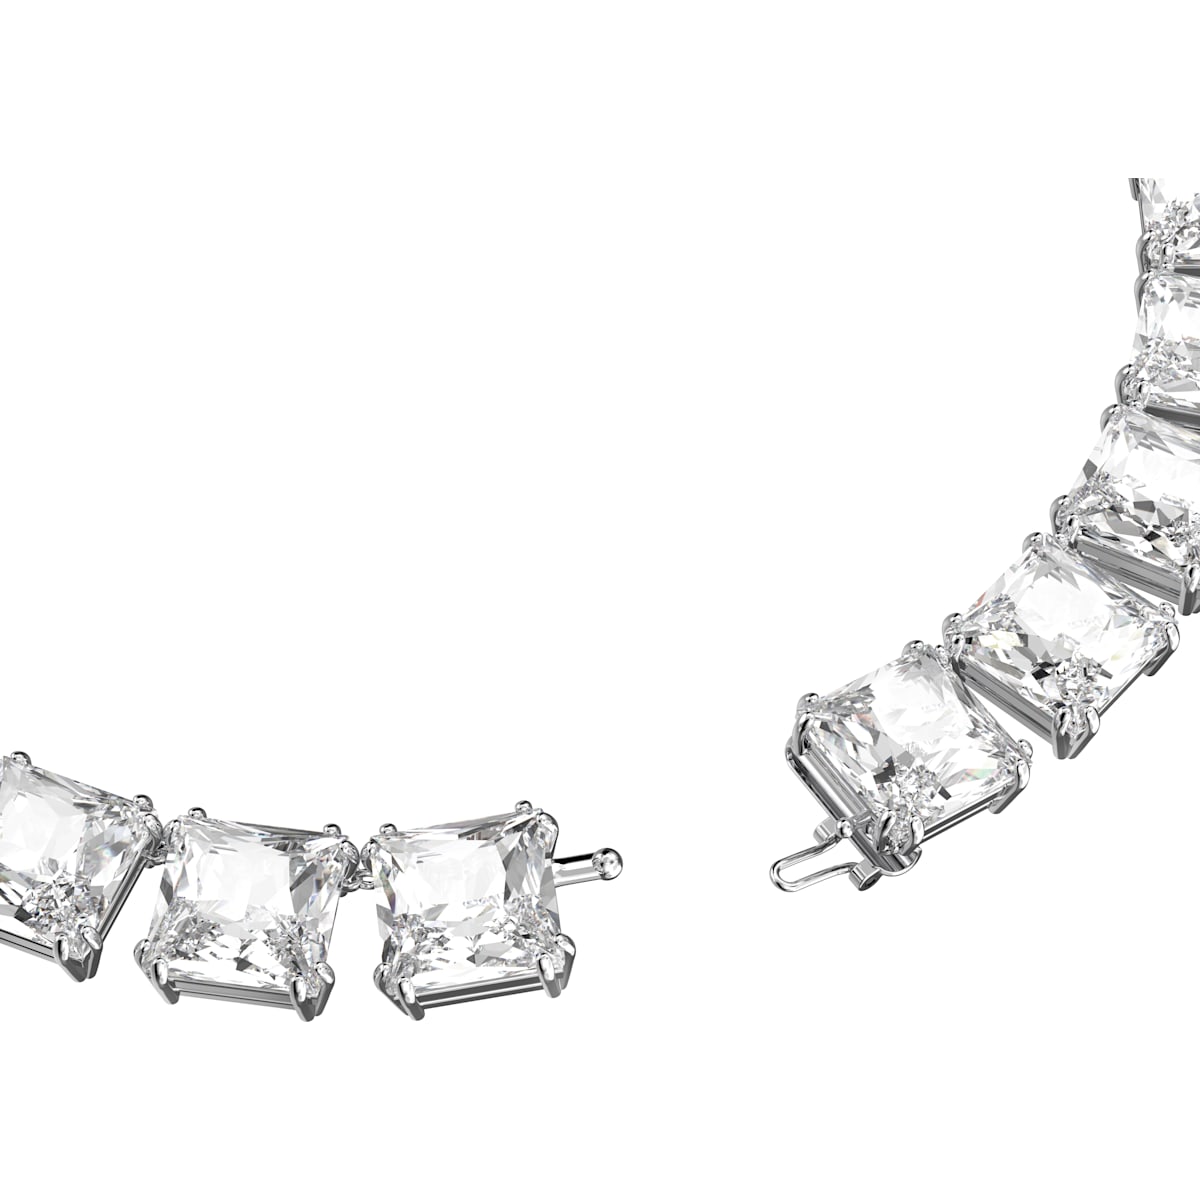 Swarovski - Millenia Halskette, Kristalle im Quadrat-Schliff, Weiss, Rhodiniert - CRYSTAL UNTERBERGER